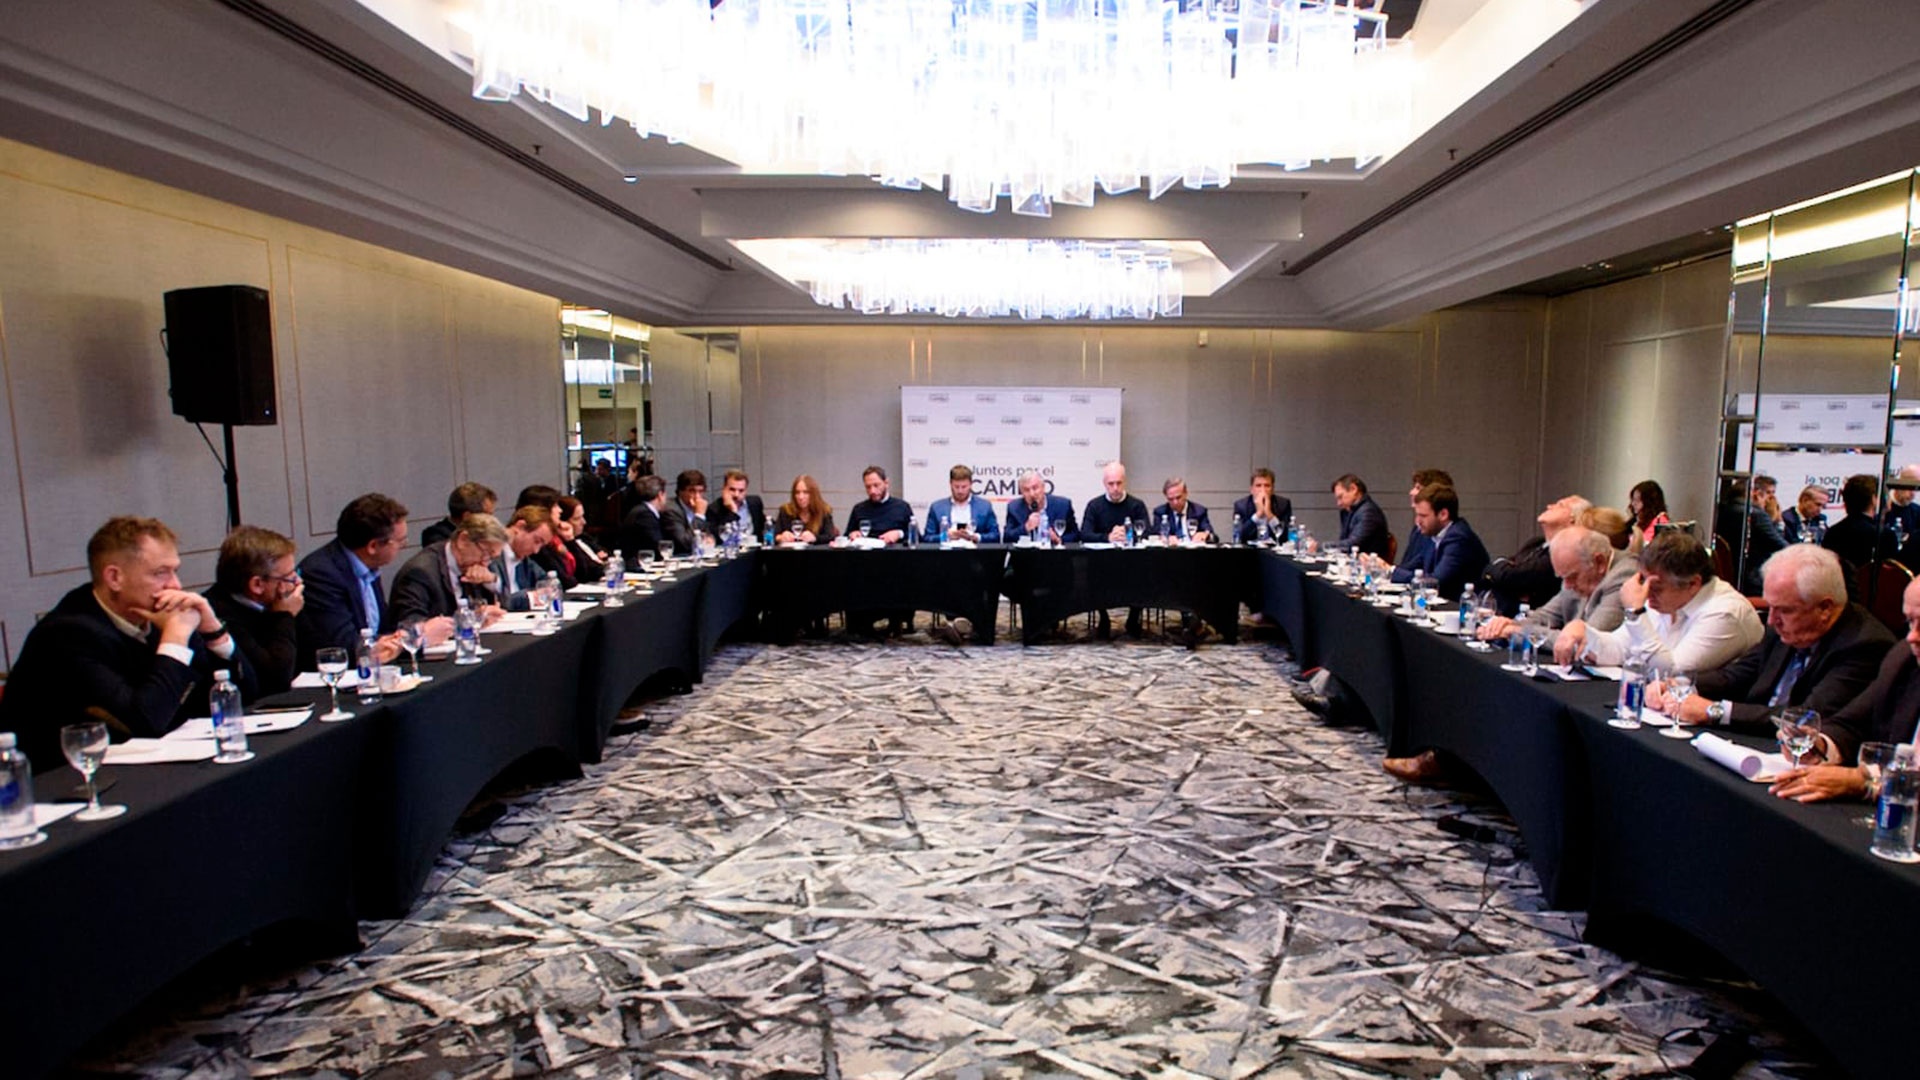 Cumbre de JxC: los presidenciables debatieron el programa económico y cuestionaron la dolarización de Milei